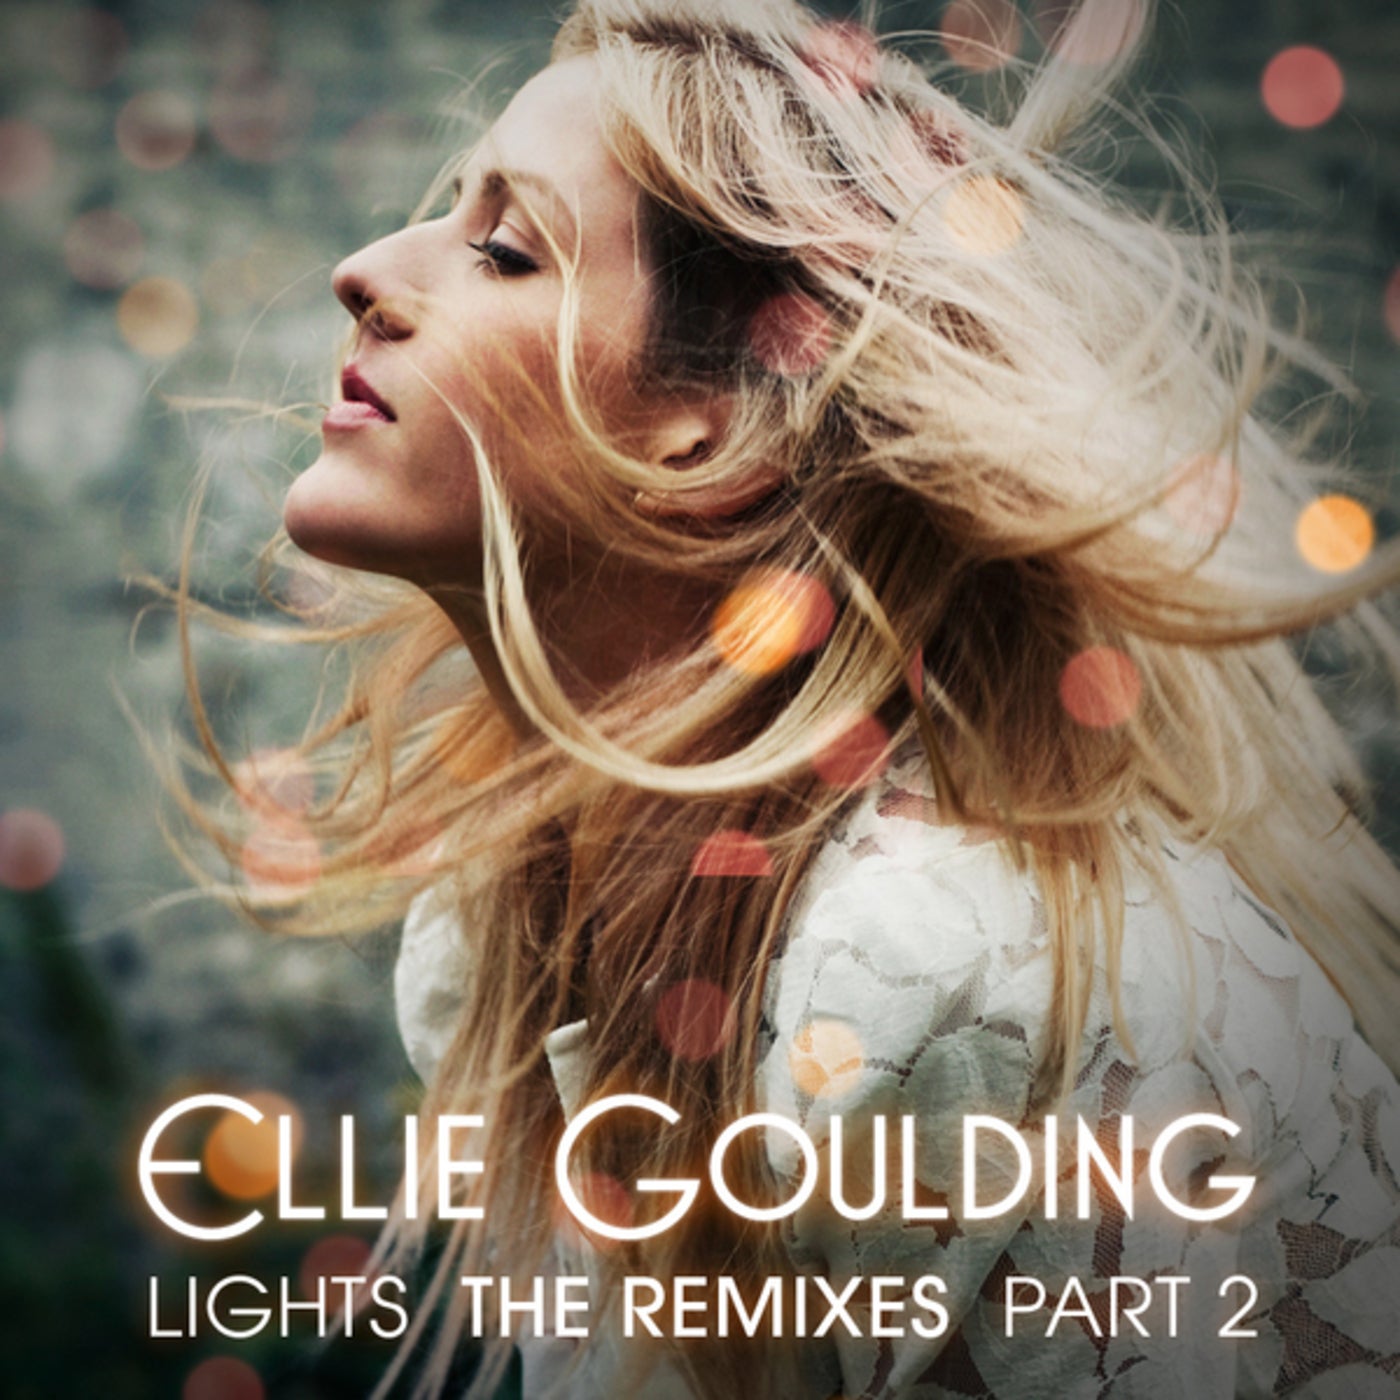 Слушать прекрасные ремиксы. Ellie Goulding. Ellie Goulding обложка. Ellie Goulding обложка альбома. Ellie Goulding Lights.